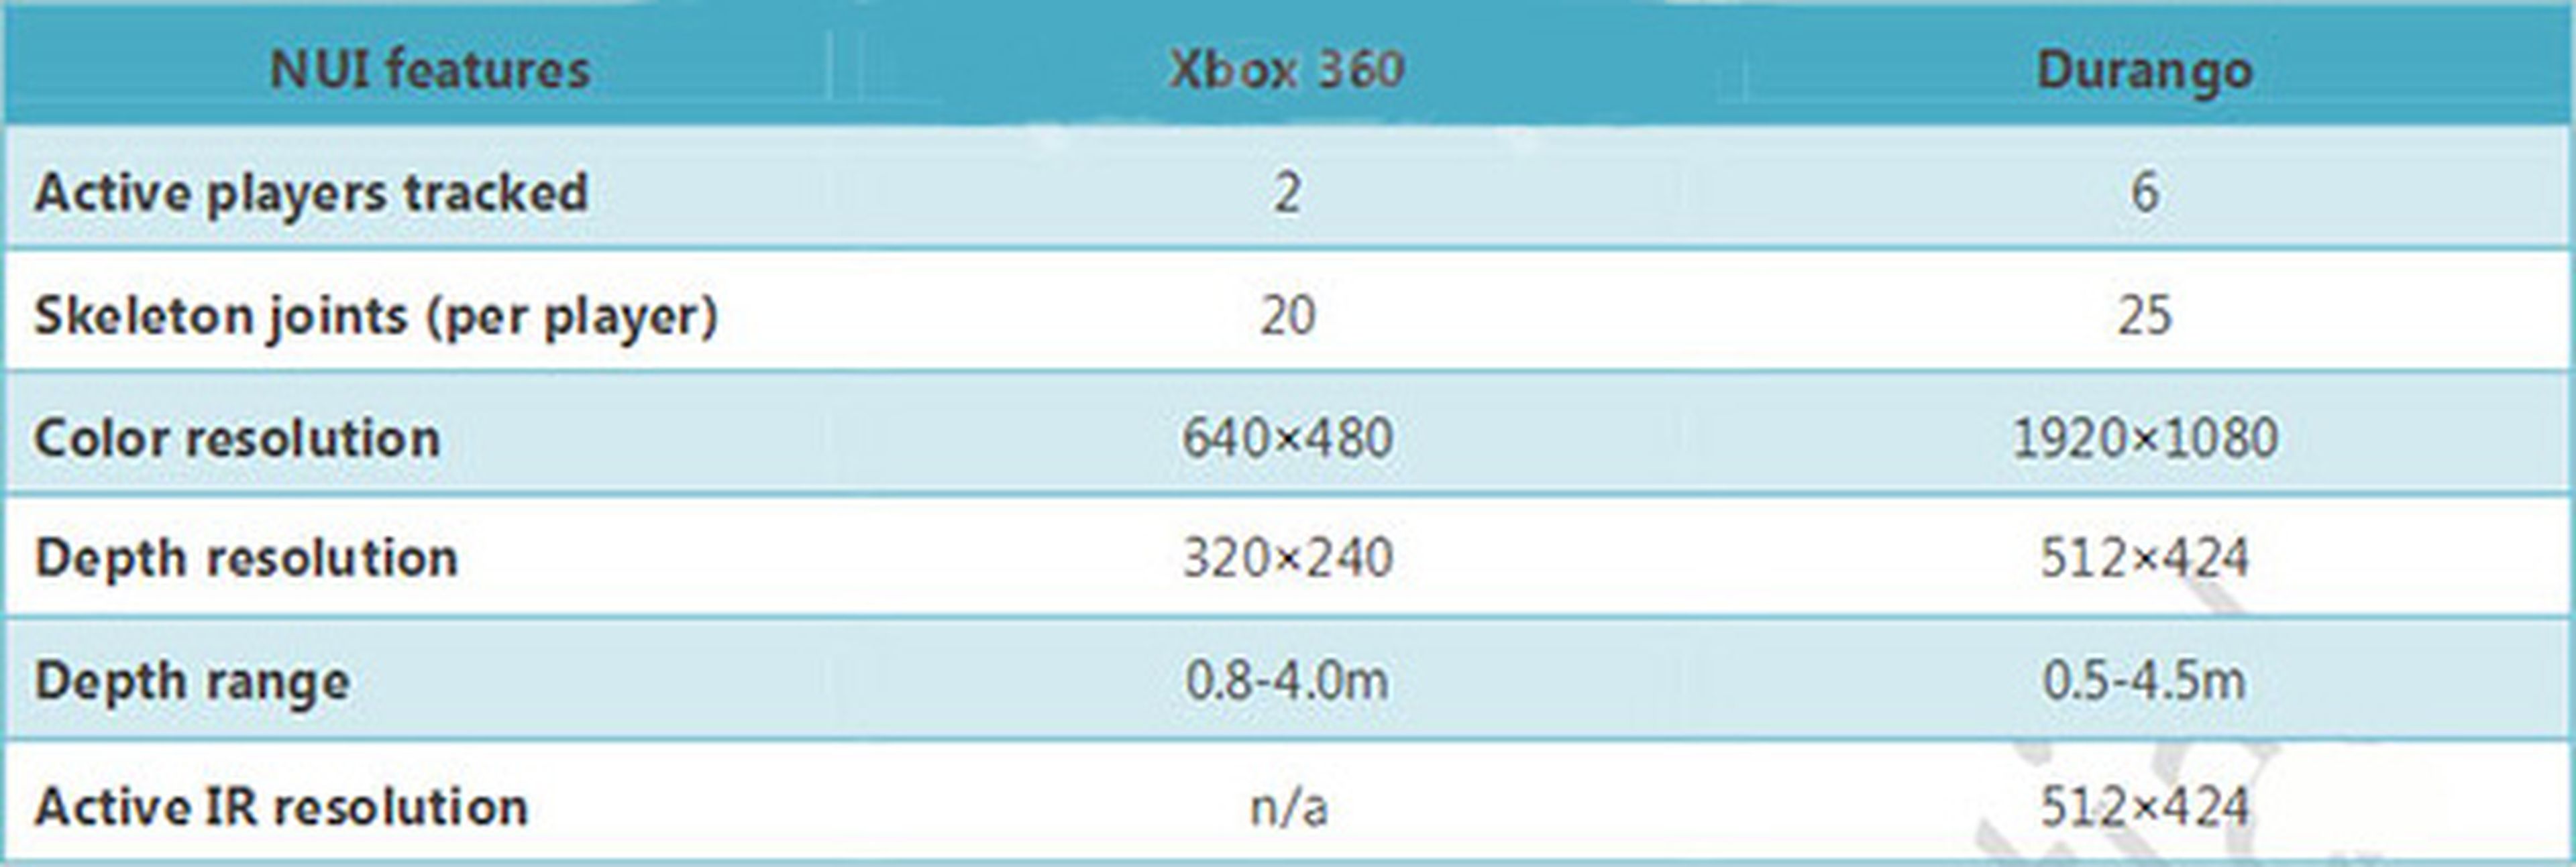 Nuevos datos sobre Xbox 720